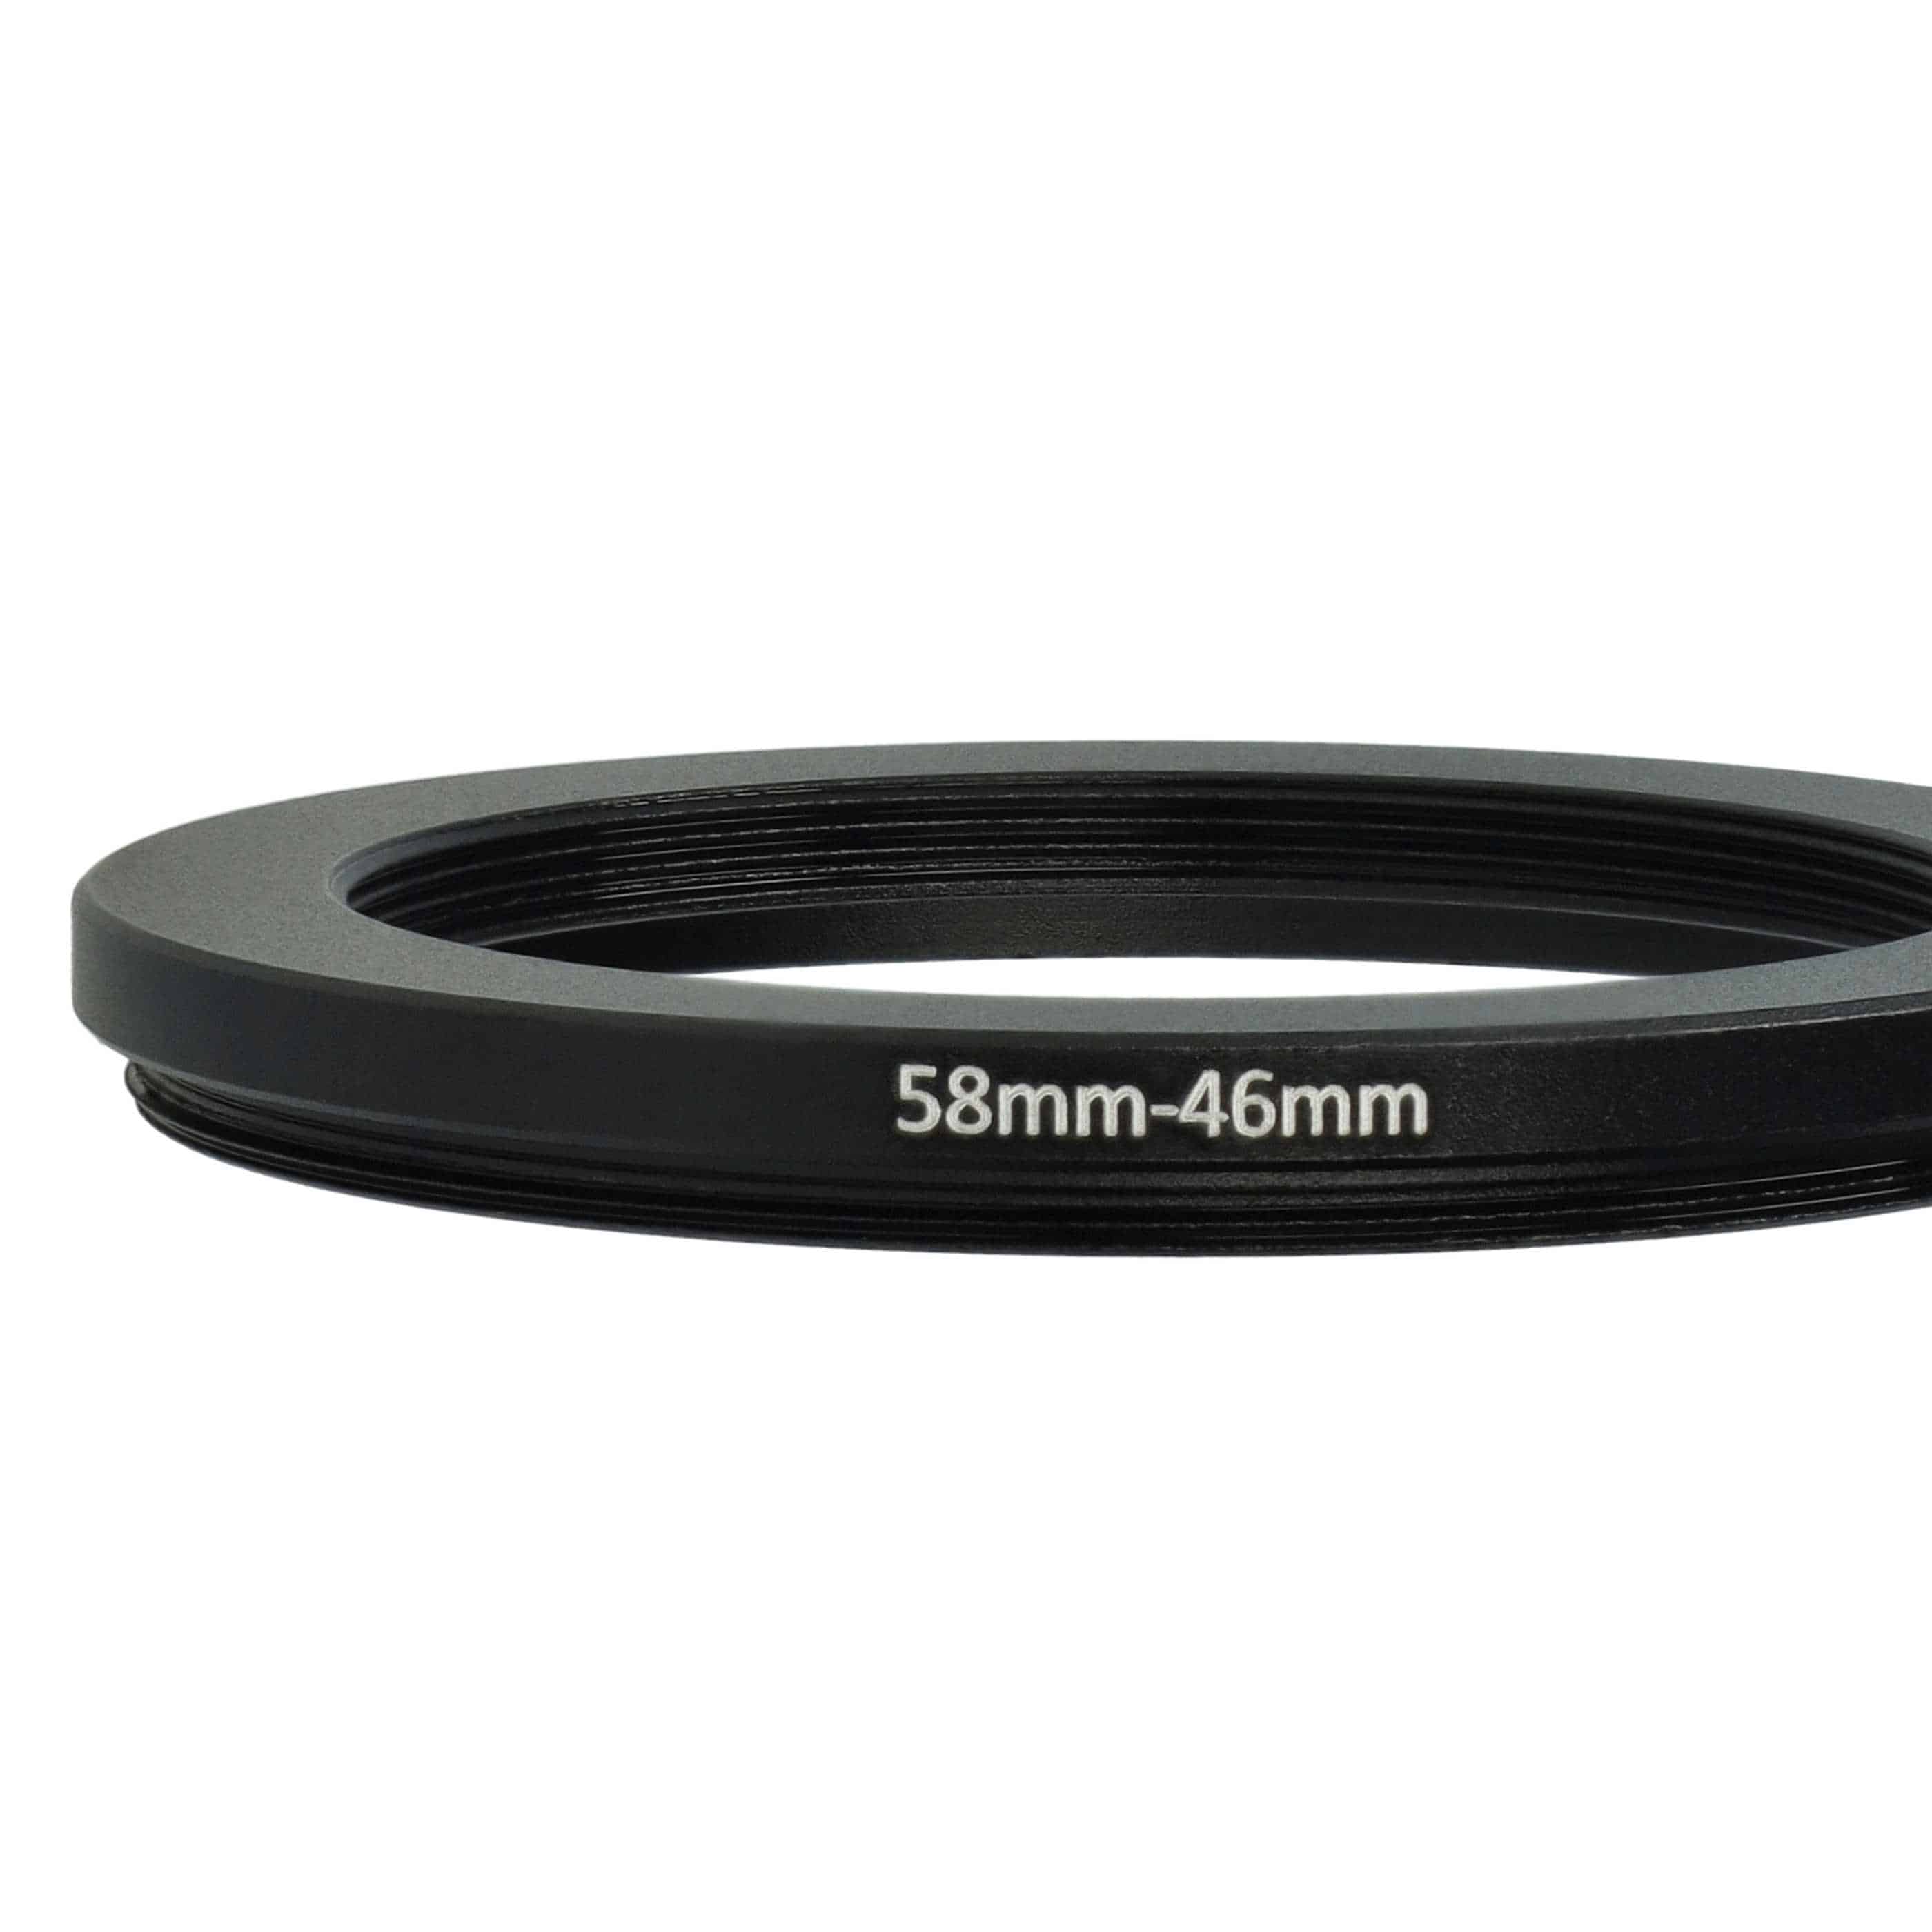 Bague d'adaptation de filtre Step-Down de 58 mm vers 46 mm pour objectif d'appareil photo - Réducteur